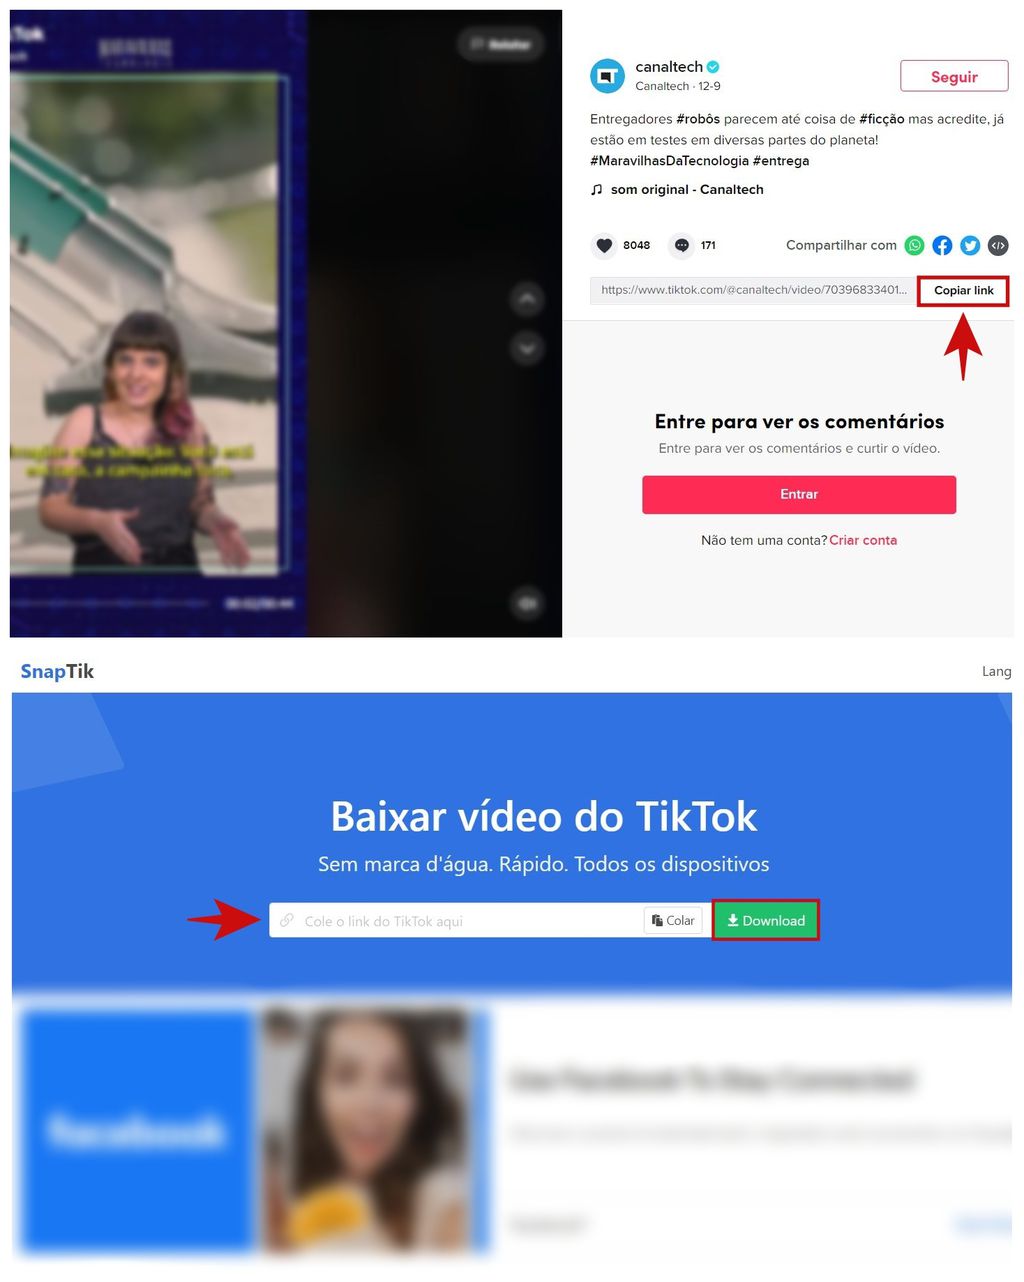 Por esse método, o usuário consegue baixar vídeos do TikTok sem marca d´água(Captura: Kris Gaiato)